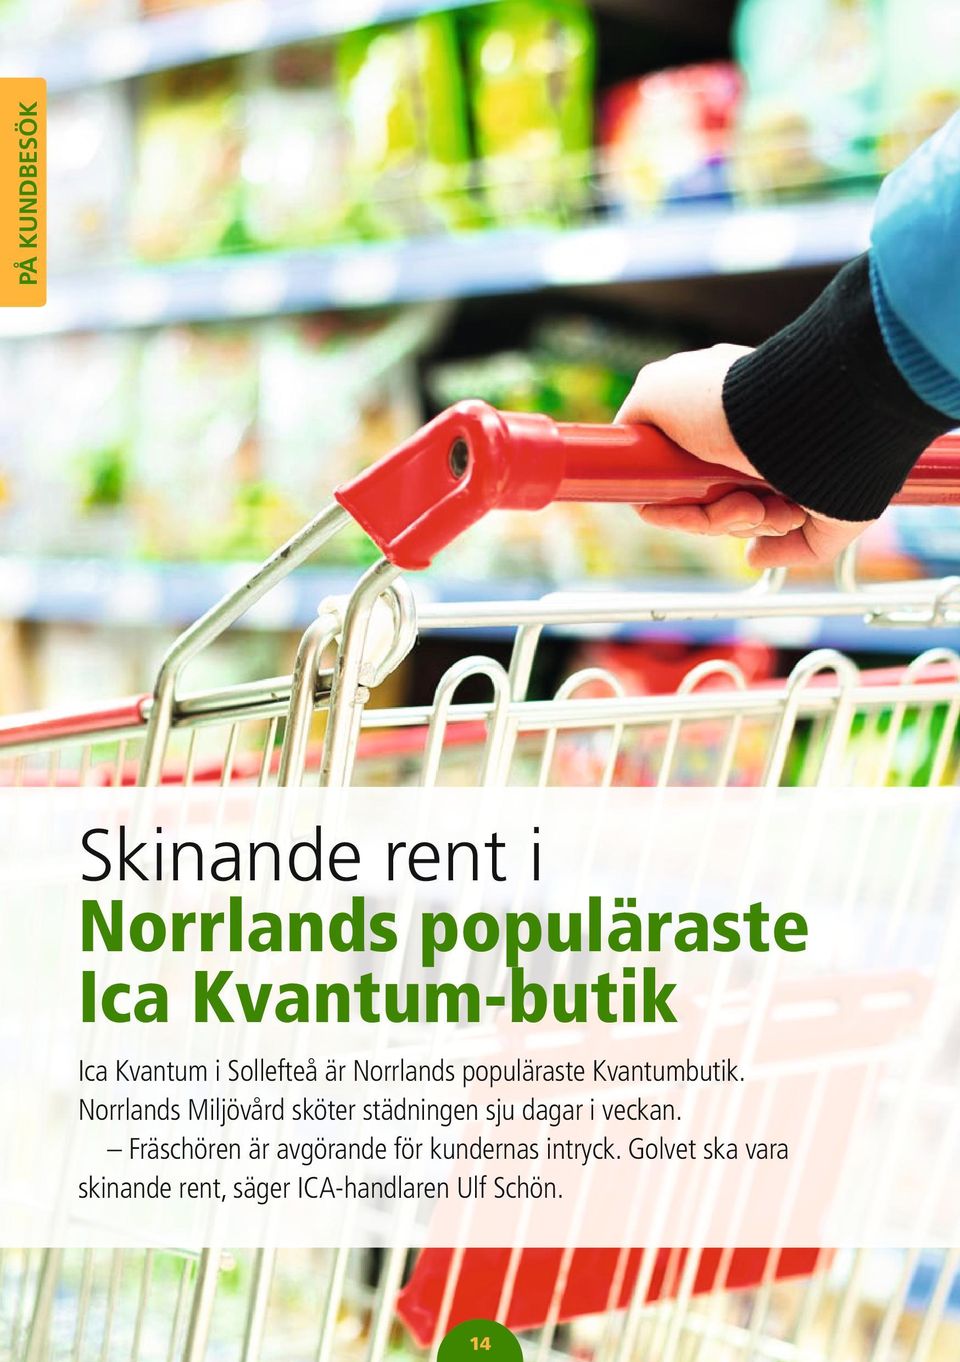 Norrlands Miljövård sköter städningen sju dagar i veckan.